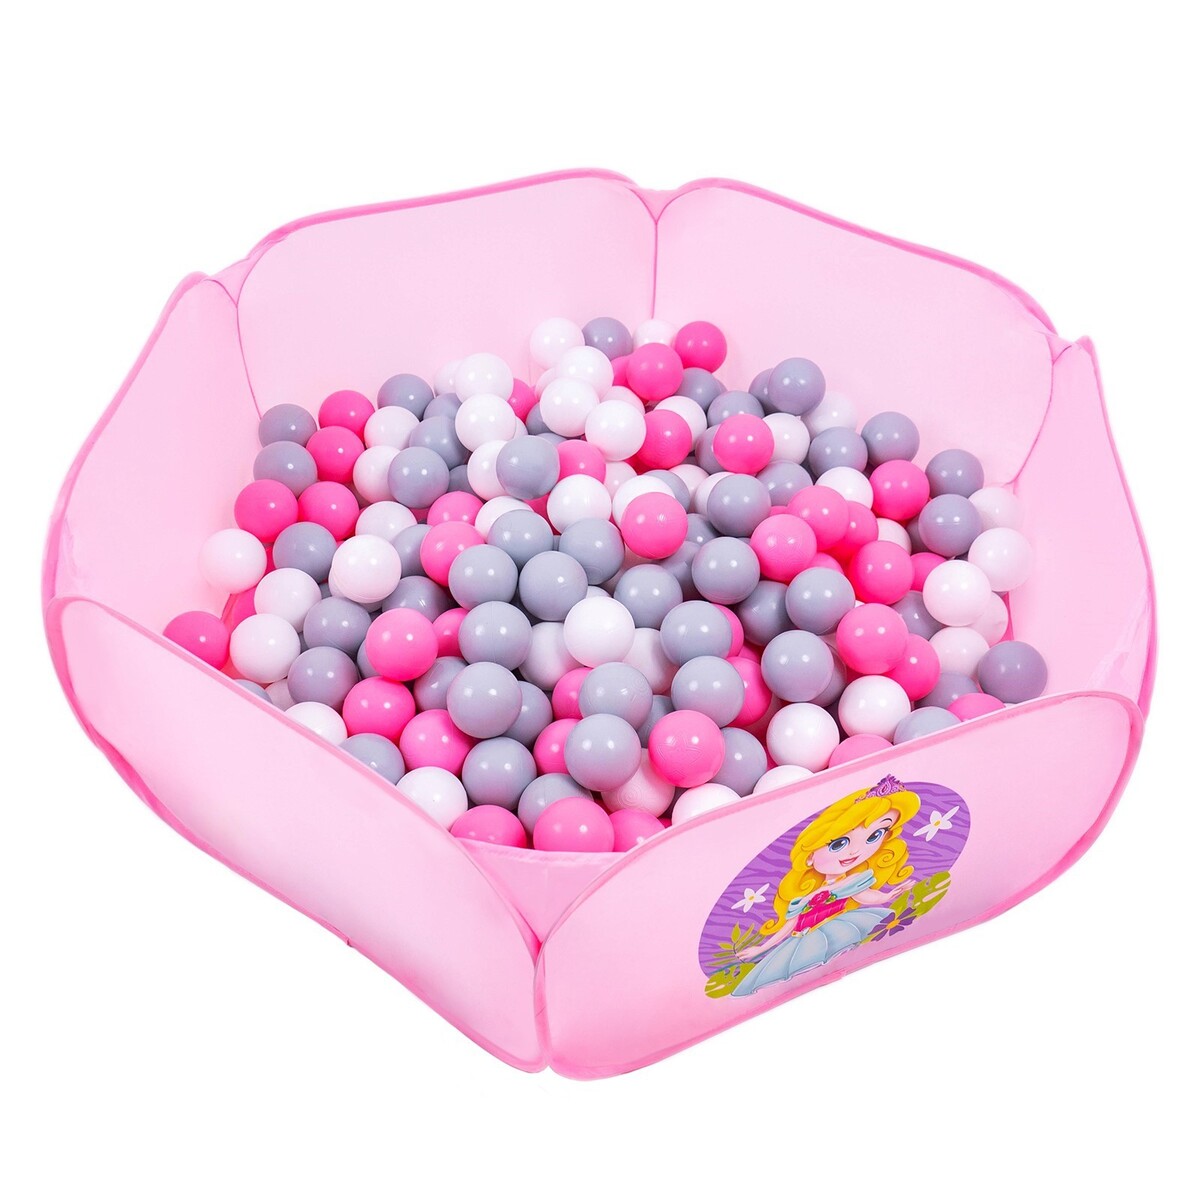 Шарики для сухого бассейна с рисунком, диаметр шара 7,5 см, набор 60 штук, цвет розовый, белый, серый шары для сухого бассейна 100шт